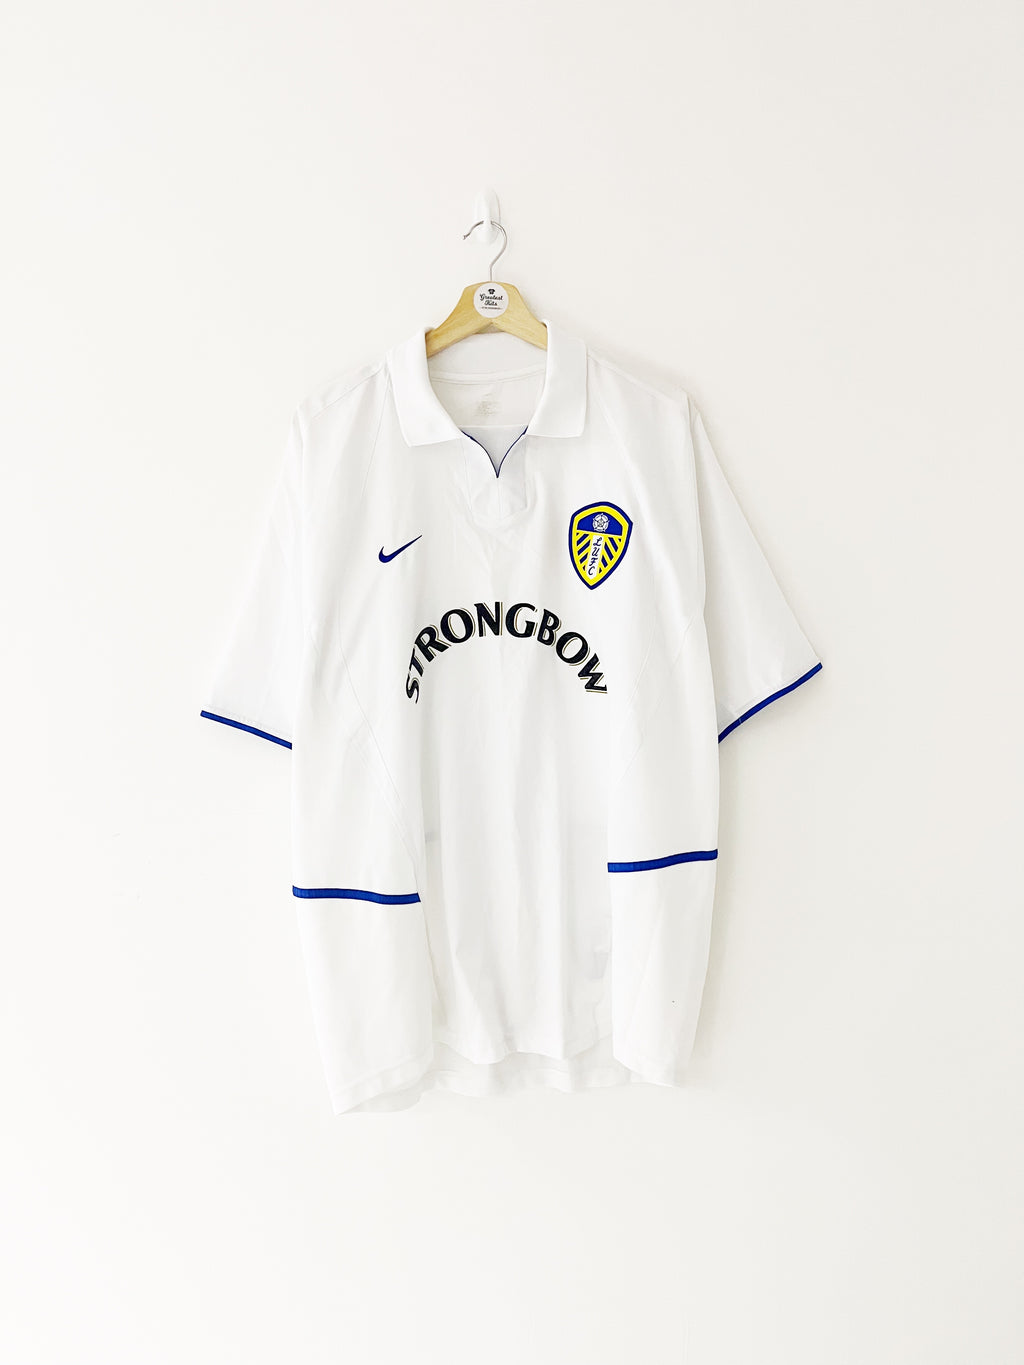 2002/03 Leeds United Home Shirt (XL) 9/10